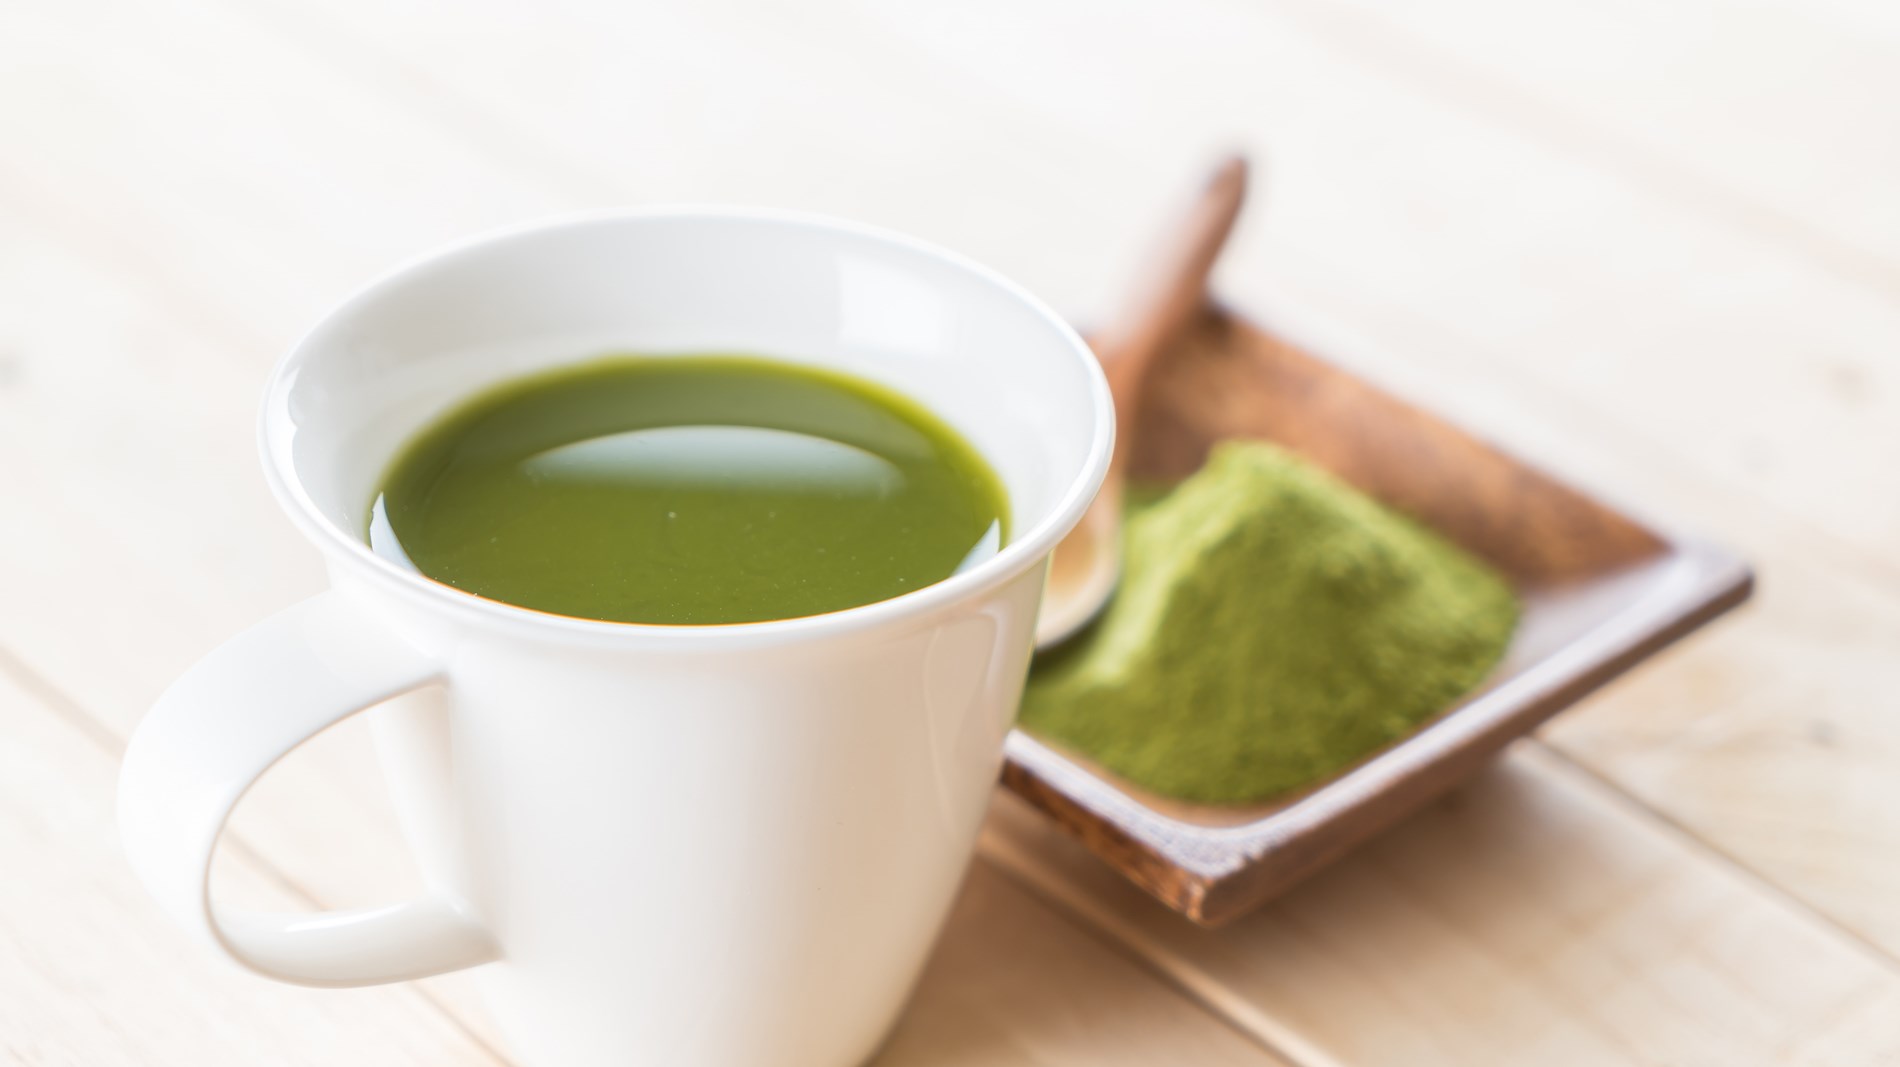 الماتشا.. فوائد مُذهلة للبشرة من مسحوق الشاي الأخضر (زهرة الخليج)